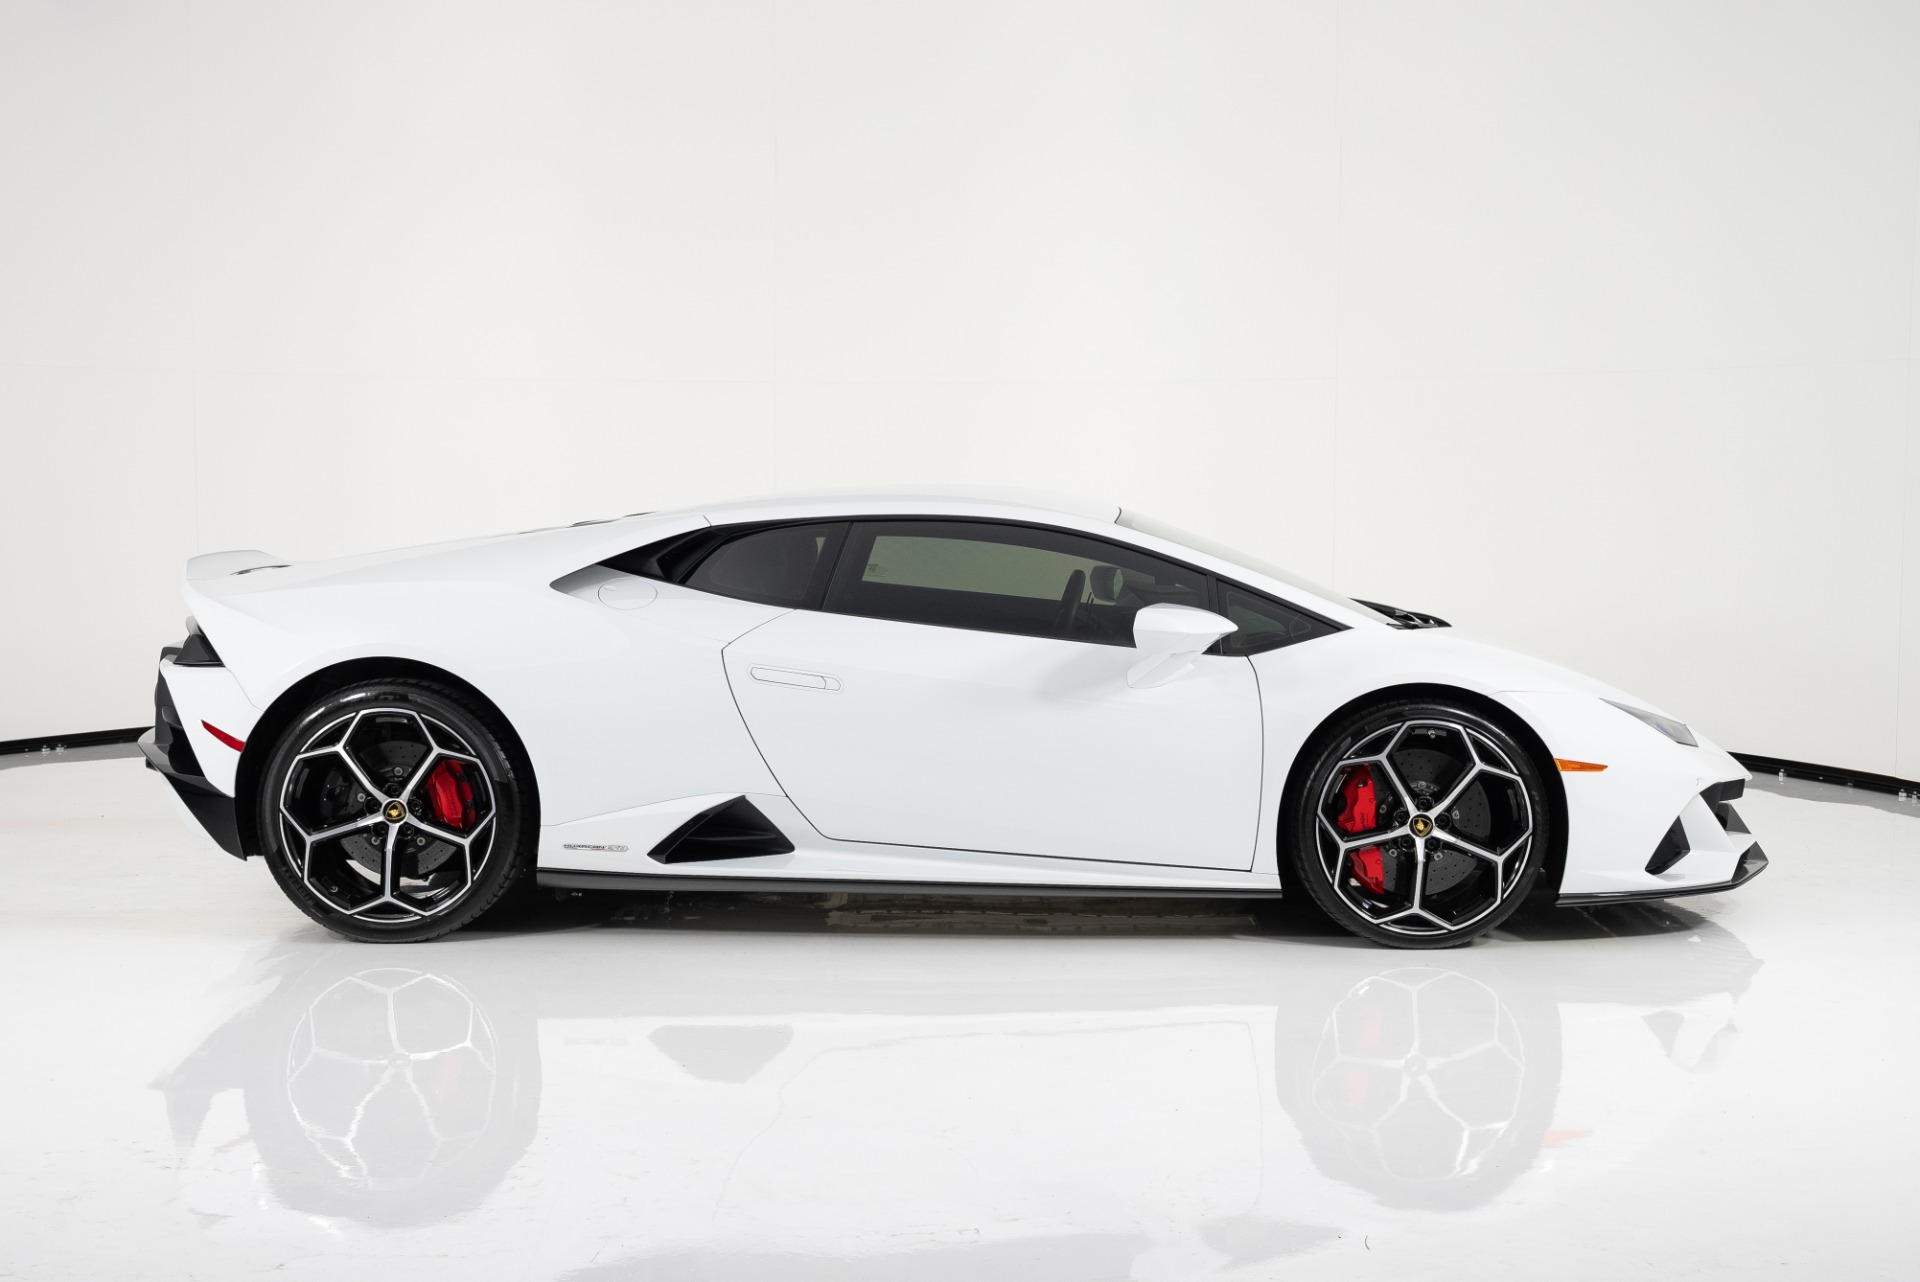 Carlifestyle - Best Lamborghini Concept? 1. Lamborghini